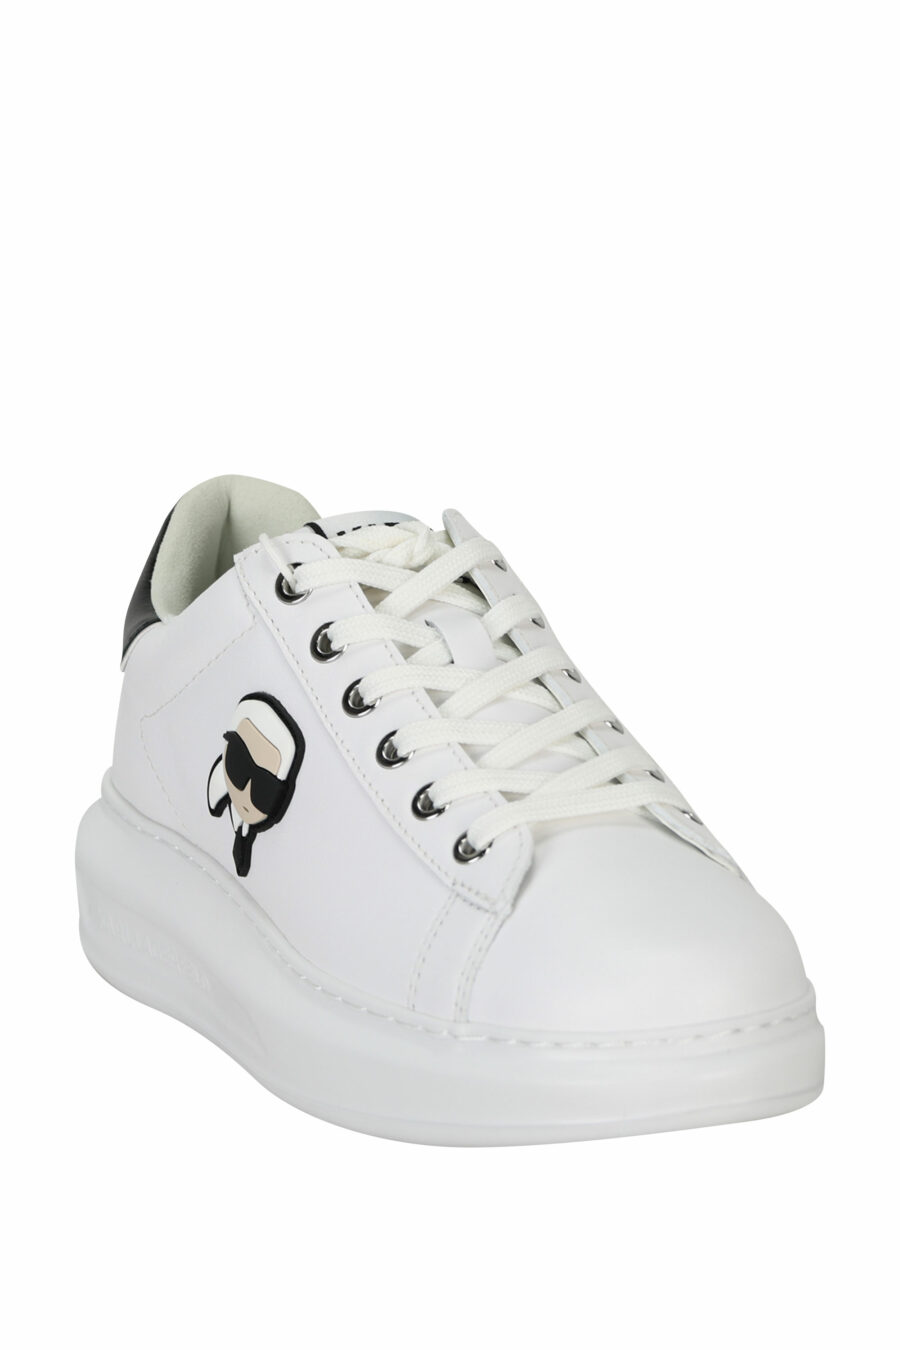 Zapatillas blancas "Kapri" con logo en goma y detalle negro - 5059529351020 1